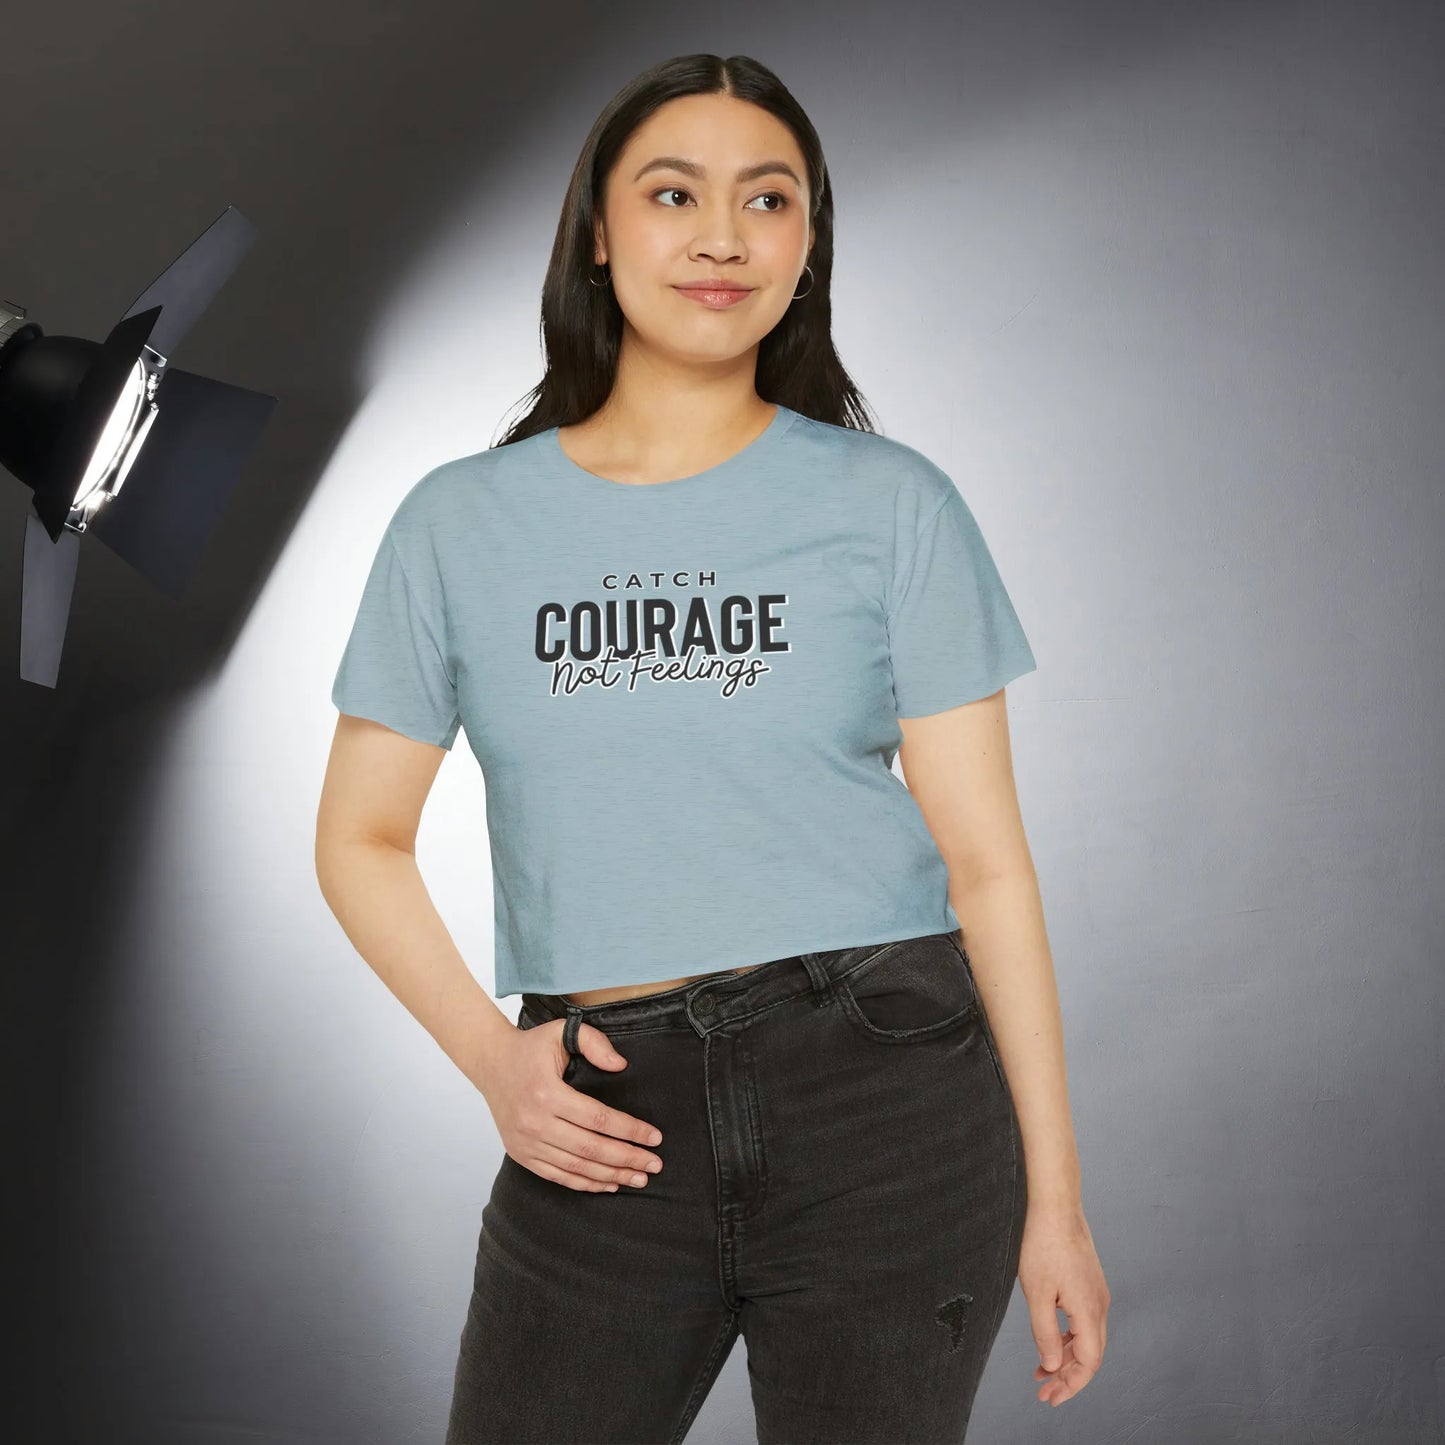 Catch Courage Not Feelings Crop Top - Trendy Women's Top Stonewash Denim